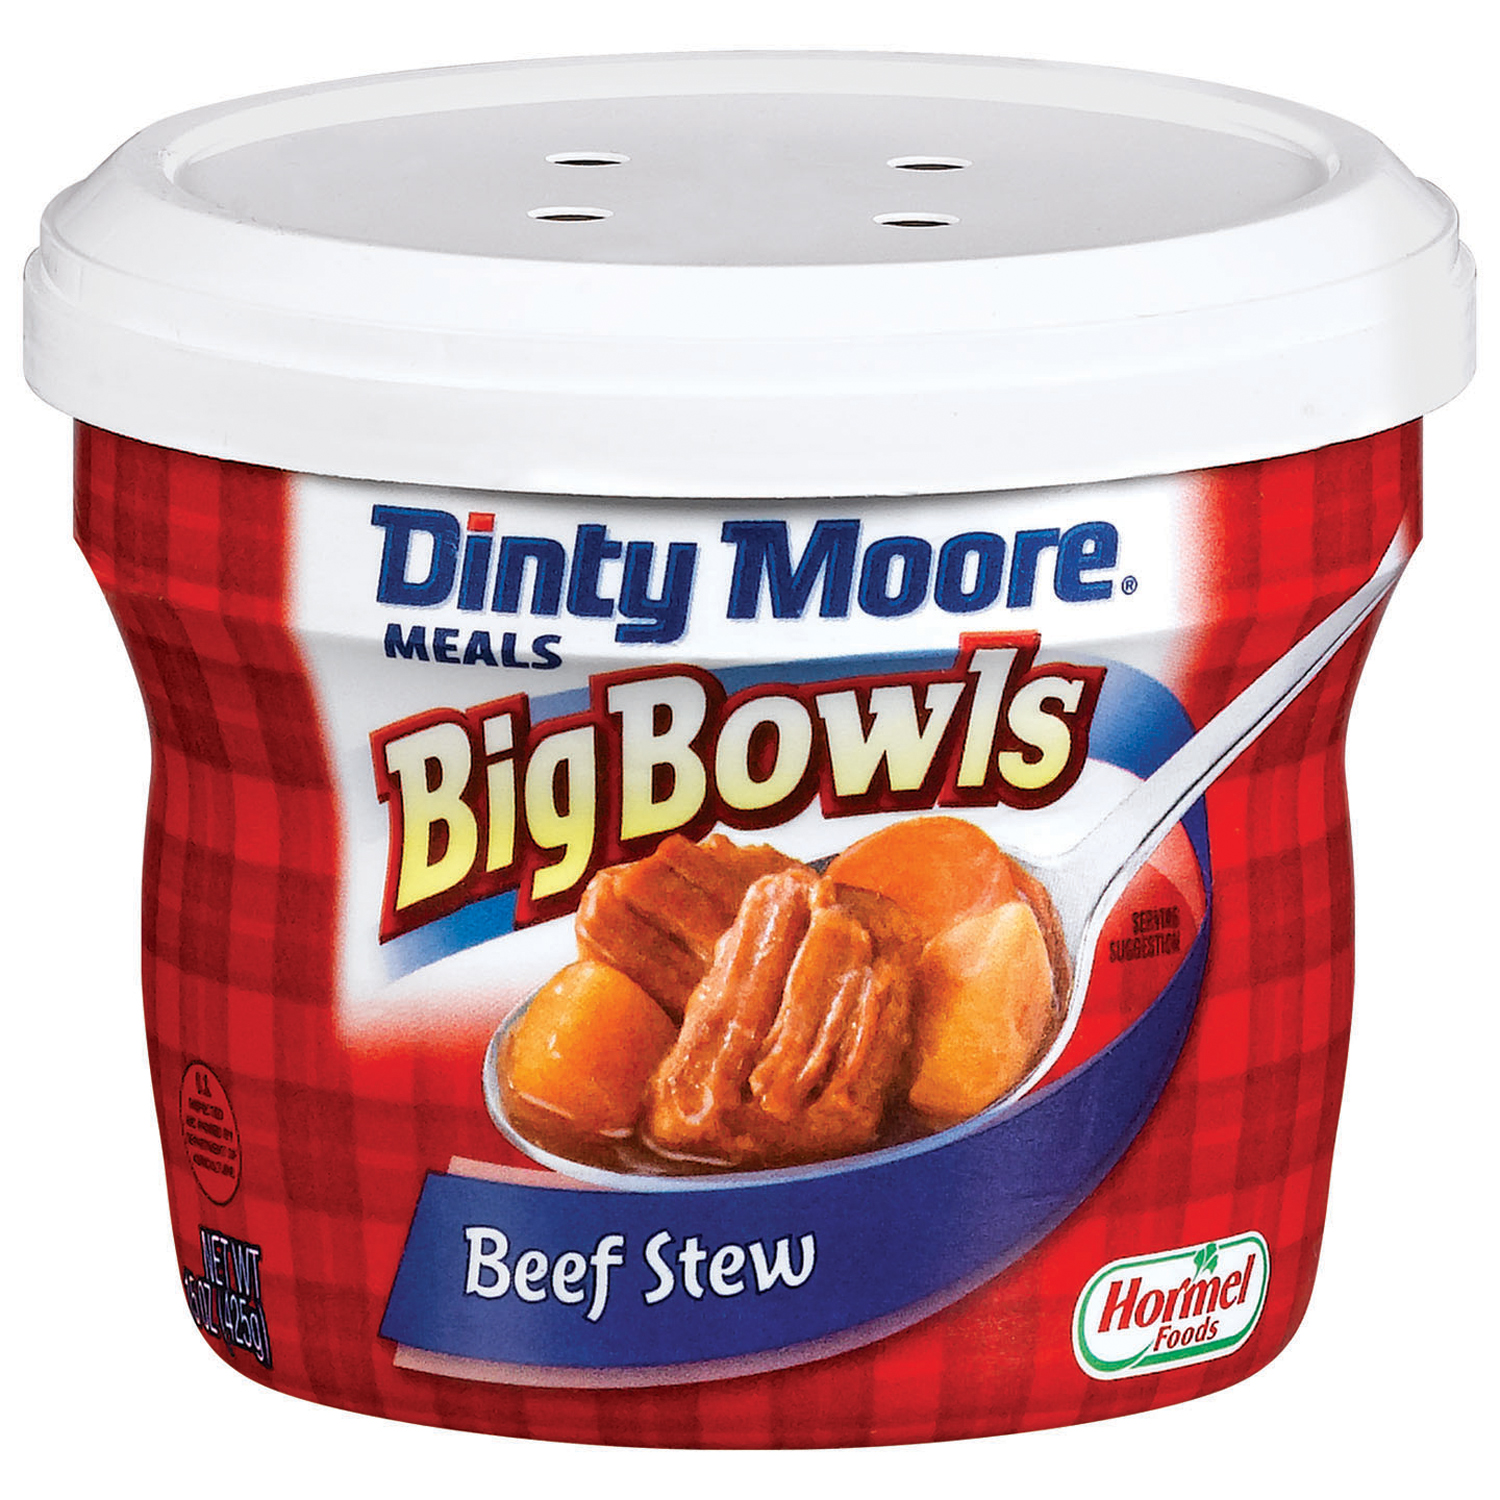 Dinty Moore Big Bowls Beef Stew, 15 oz (425 g)